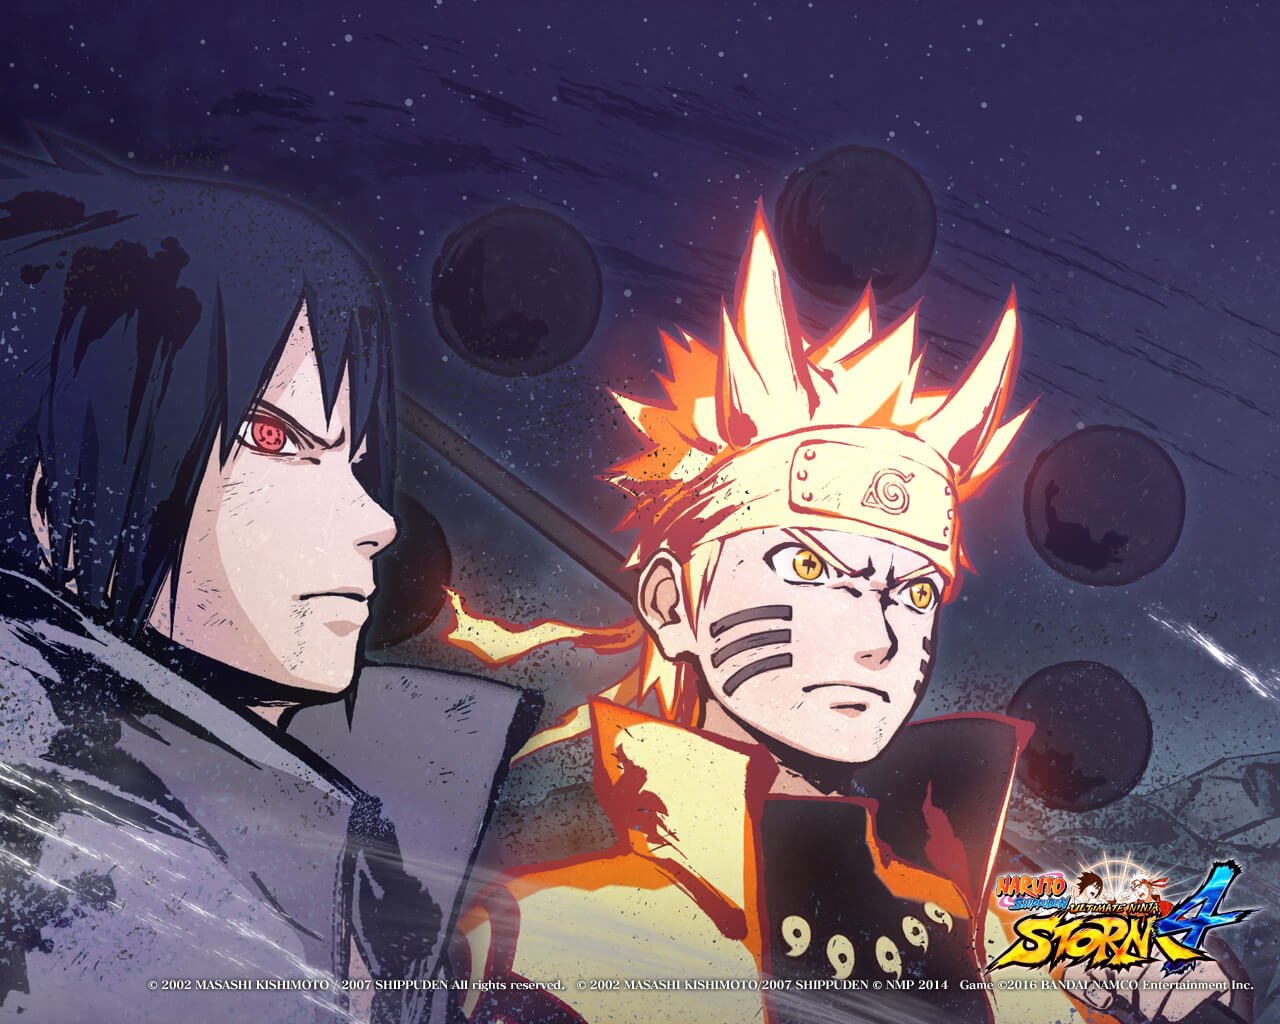 Naruto Ultimate miễn phí - một trò chơi đỉnh cao dành cho những fan hâm mộ của Naruto. Điều đặc biệt là bạn có thể tải và chơi trò chơi này hoàn toàn miễn phí. Bạn có sẵn sàng để trở thành ninja mạnh nhất của bộ truyện Naruto chưa?